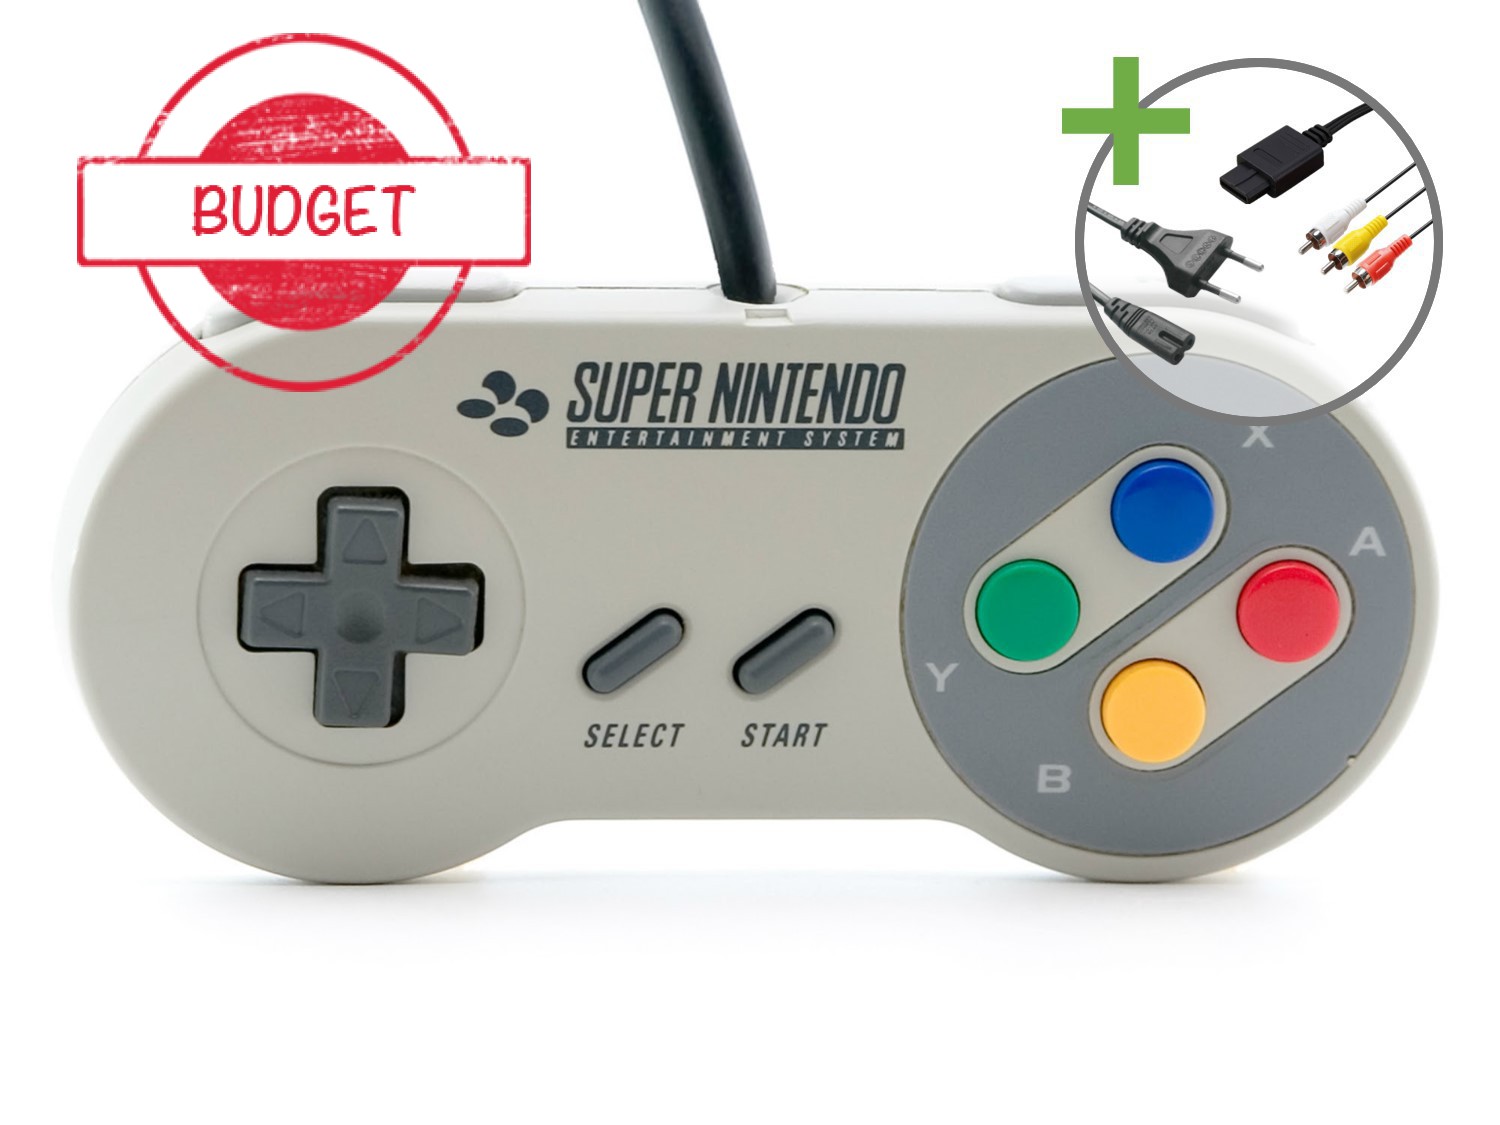 Super Nintendo Starter Pack - Control Set Edition - Budget - Super Nintendo Hardware - 2